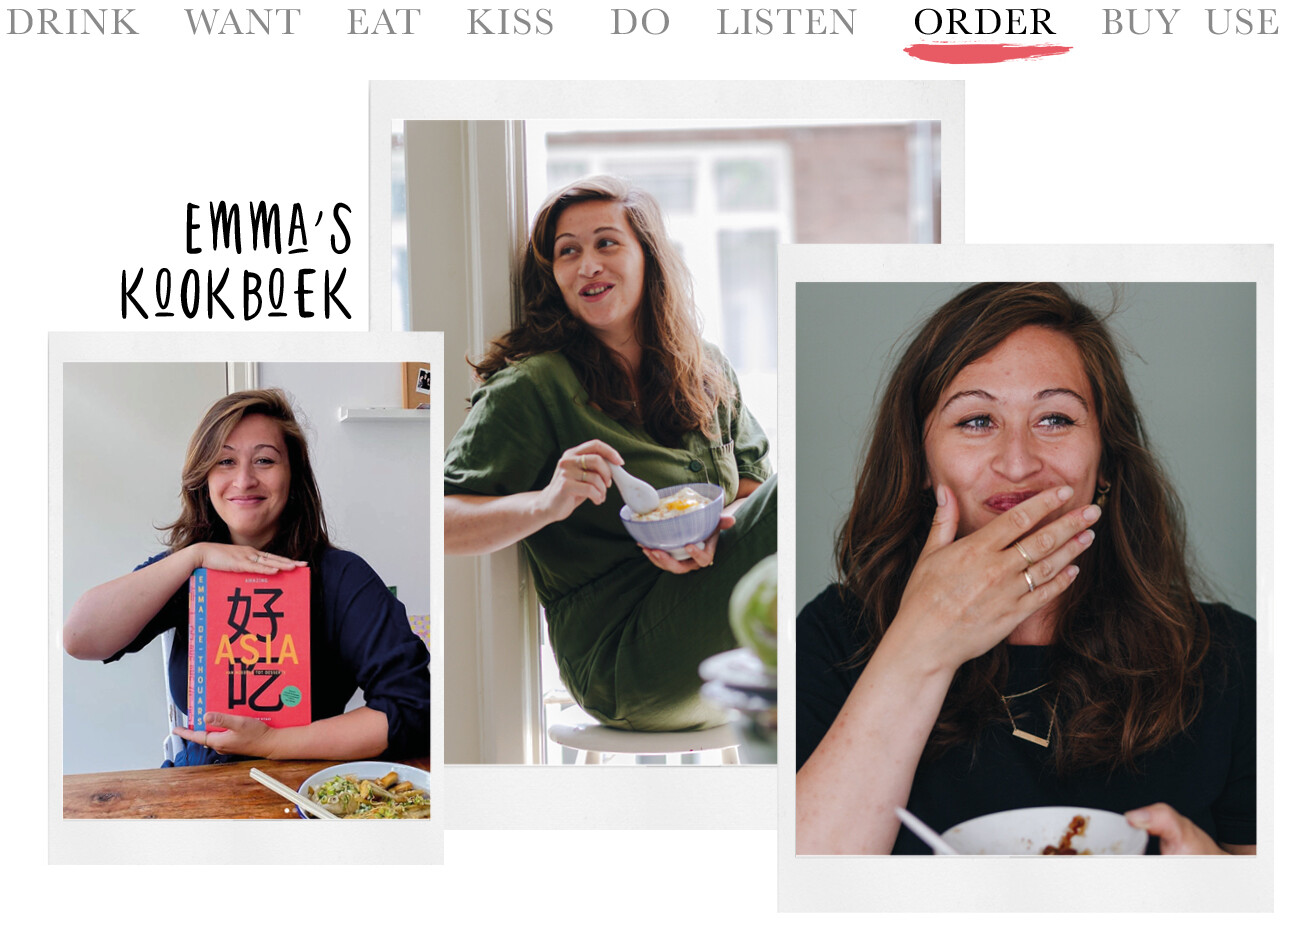 Today we..order Emma’s kookboek